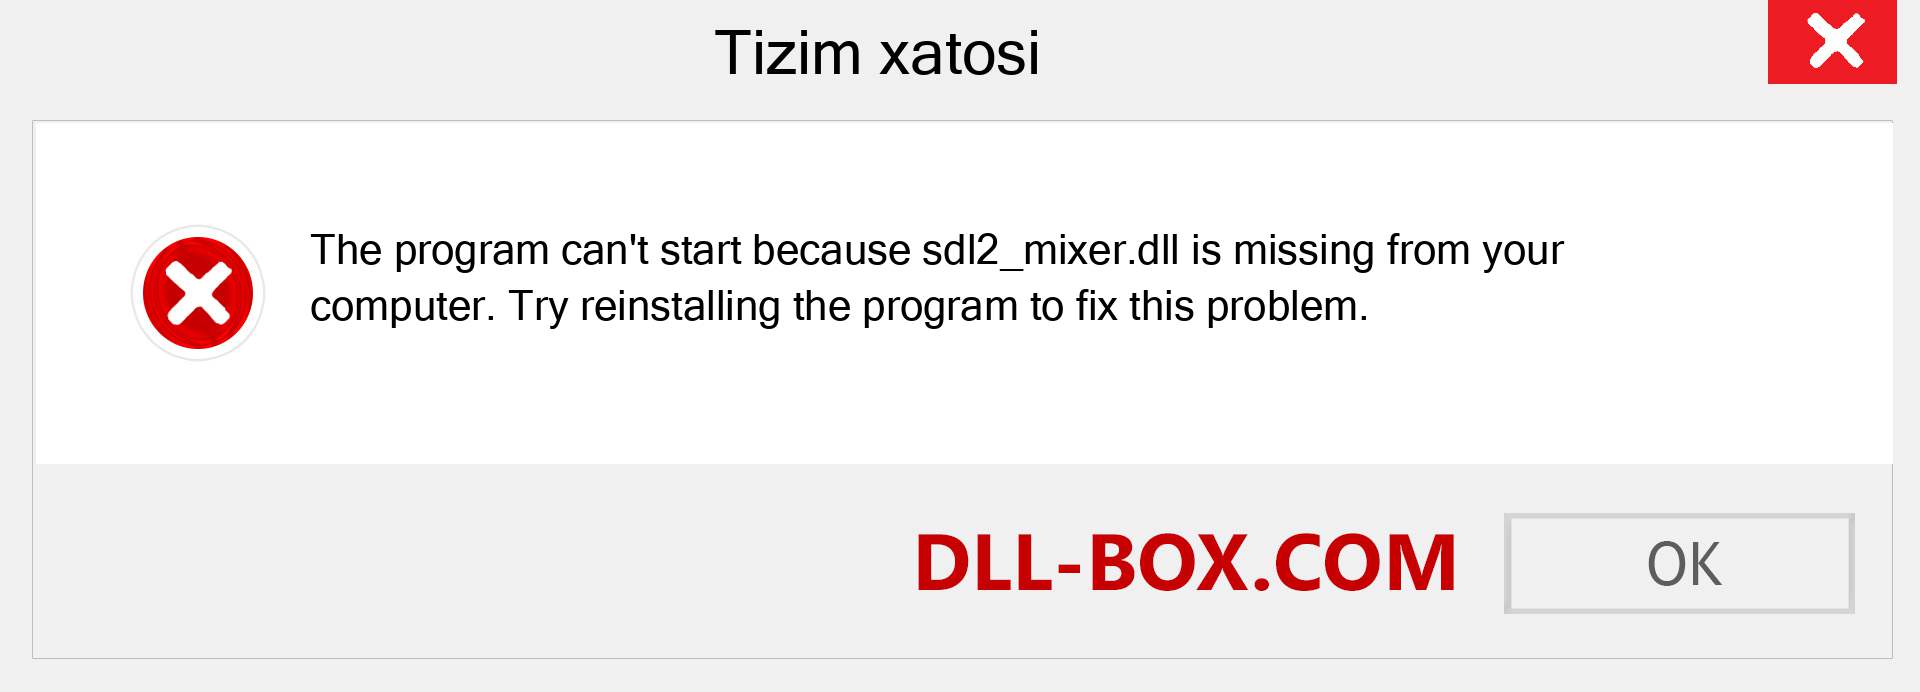 sdl2_mixer.dll fayli yo'qolganmi?. Windows 7, 8, 10 uchun yuklab olish - Windowsda sdl2_mixer dll etishmayotgan xatoni tuzating, rasmlar, rasmlar